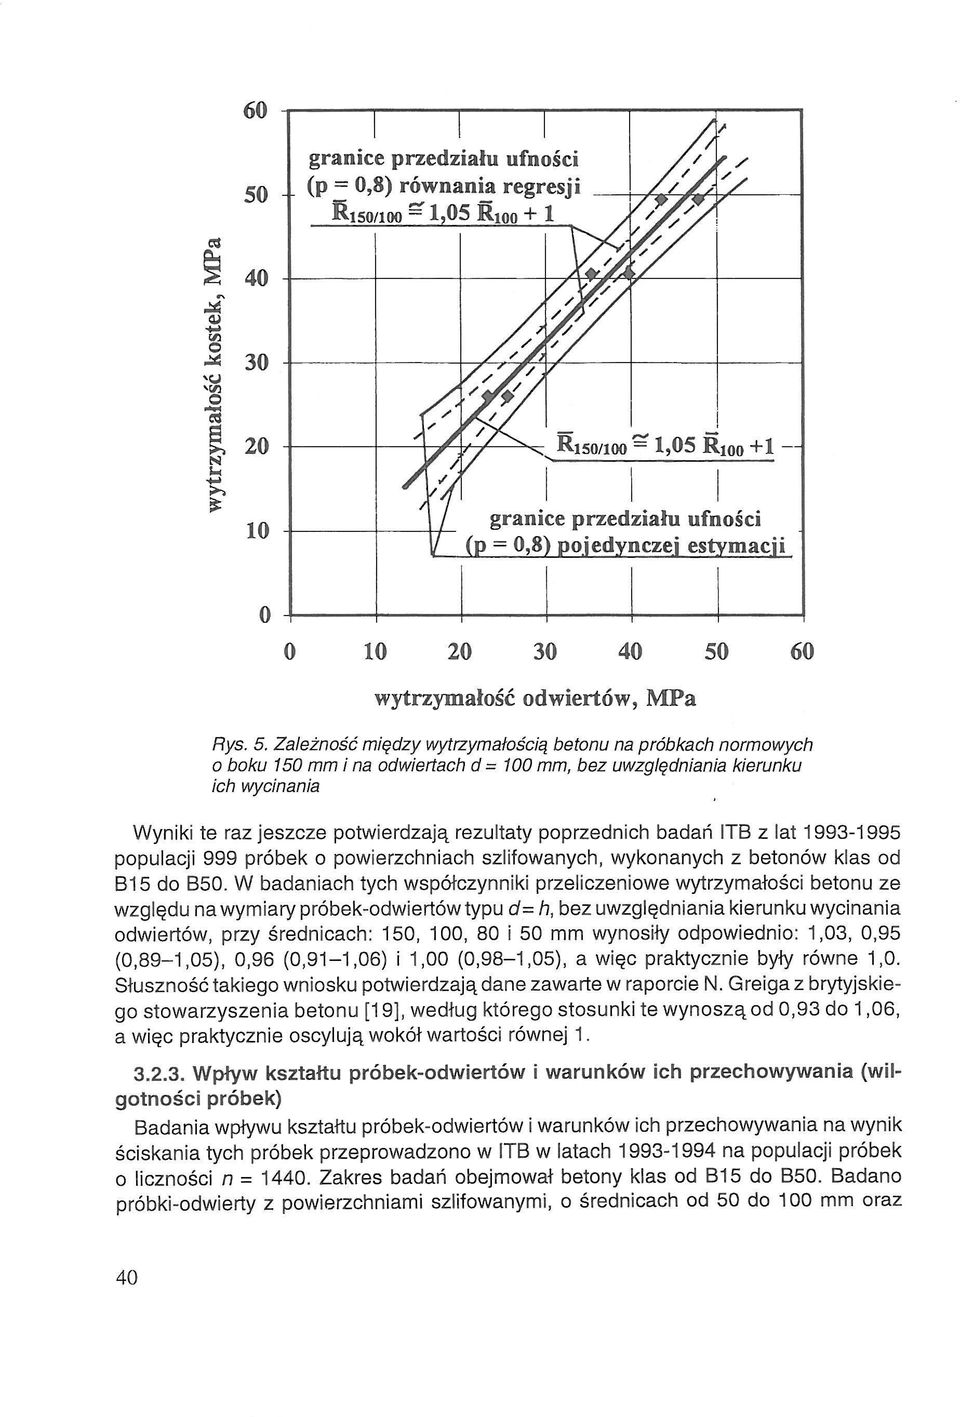 poprzednich badań ITB z lat 1993-1995 populacji 999 próbek o powierzchniach szlifowanych, wykonanych z betonów klas od B15 do B50.